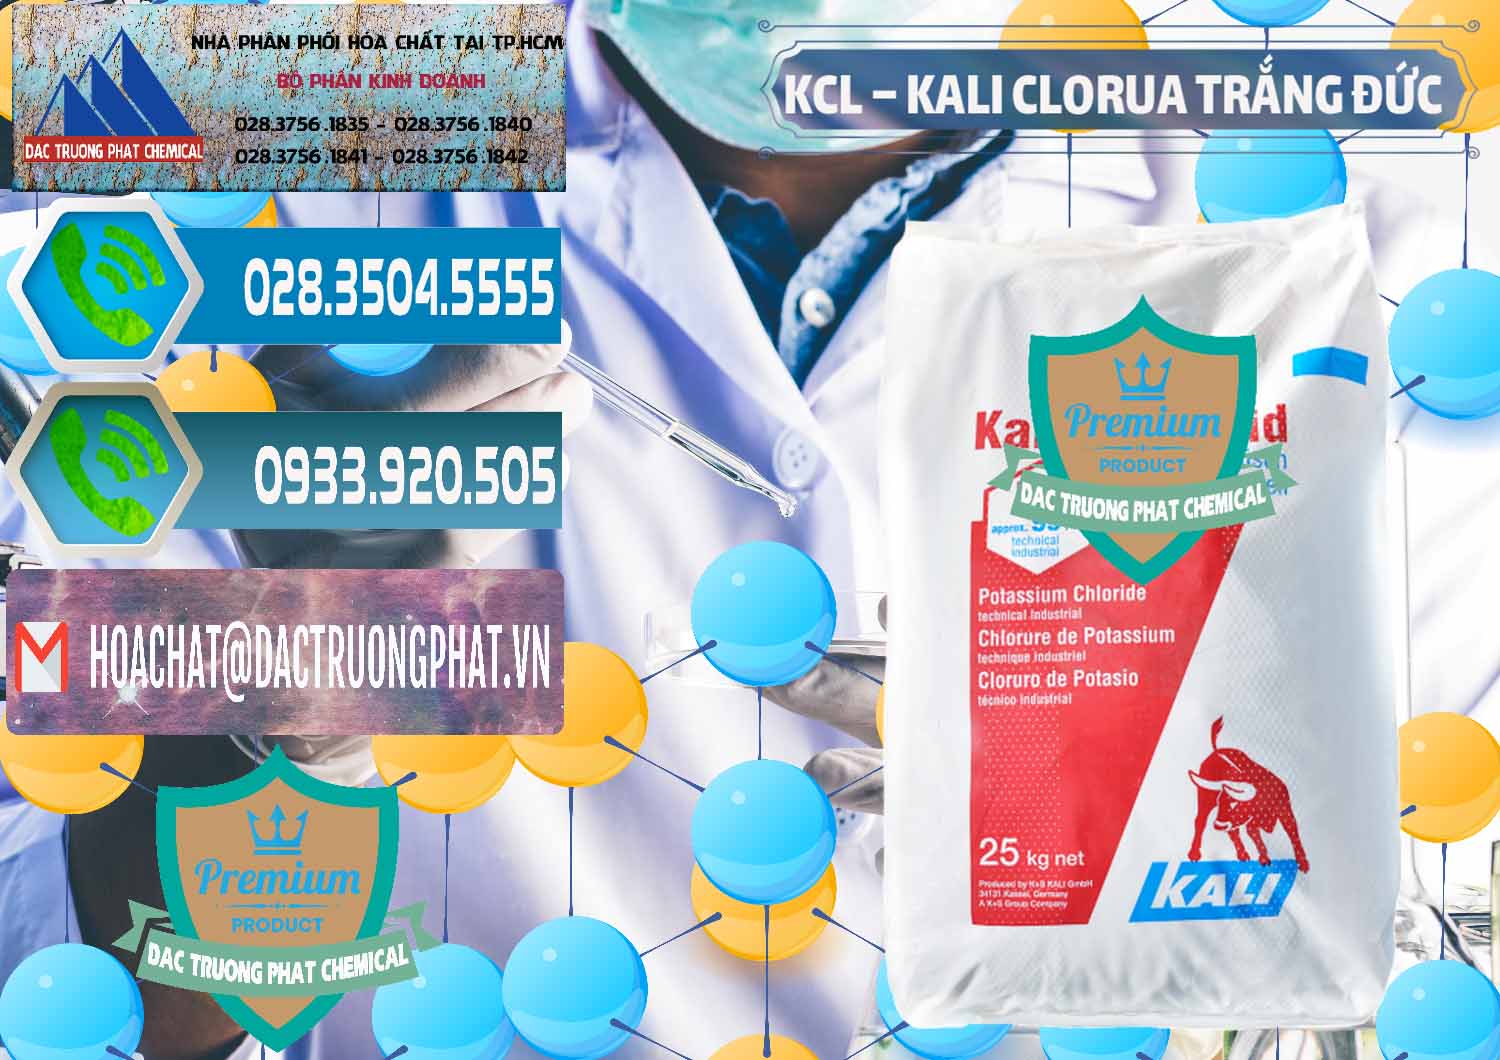 Cty bán ( cung cấp ) KCL – Kali Clorua Trắng Đức Germany - 0086 - Đơn vị chuyên cung ứng & phân phối hóa chất tại TP.HCM - congtyhoachat.net